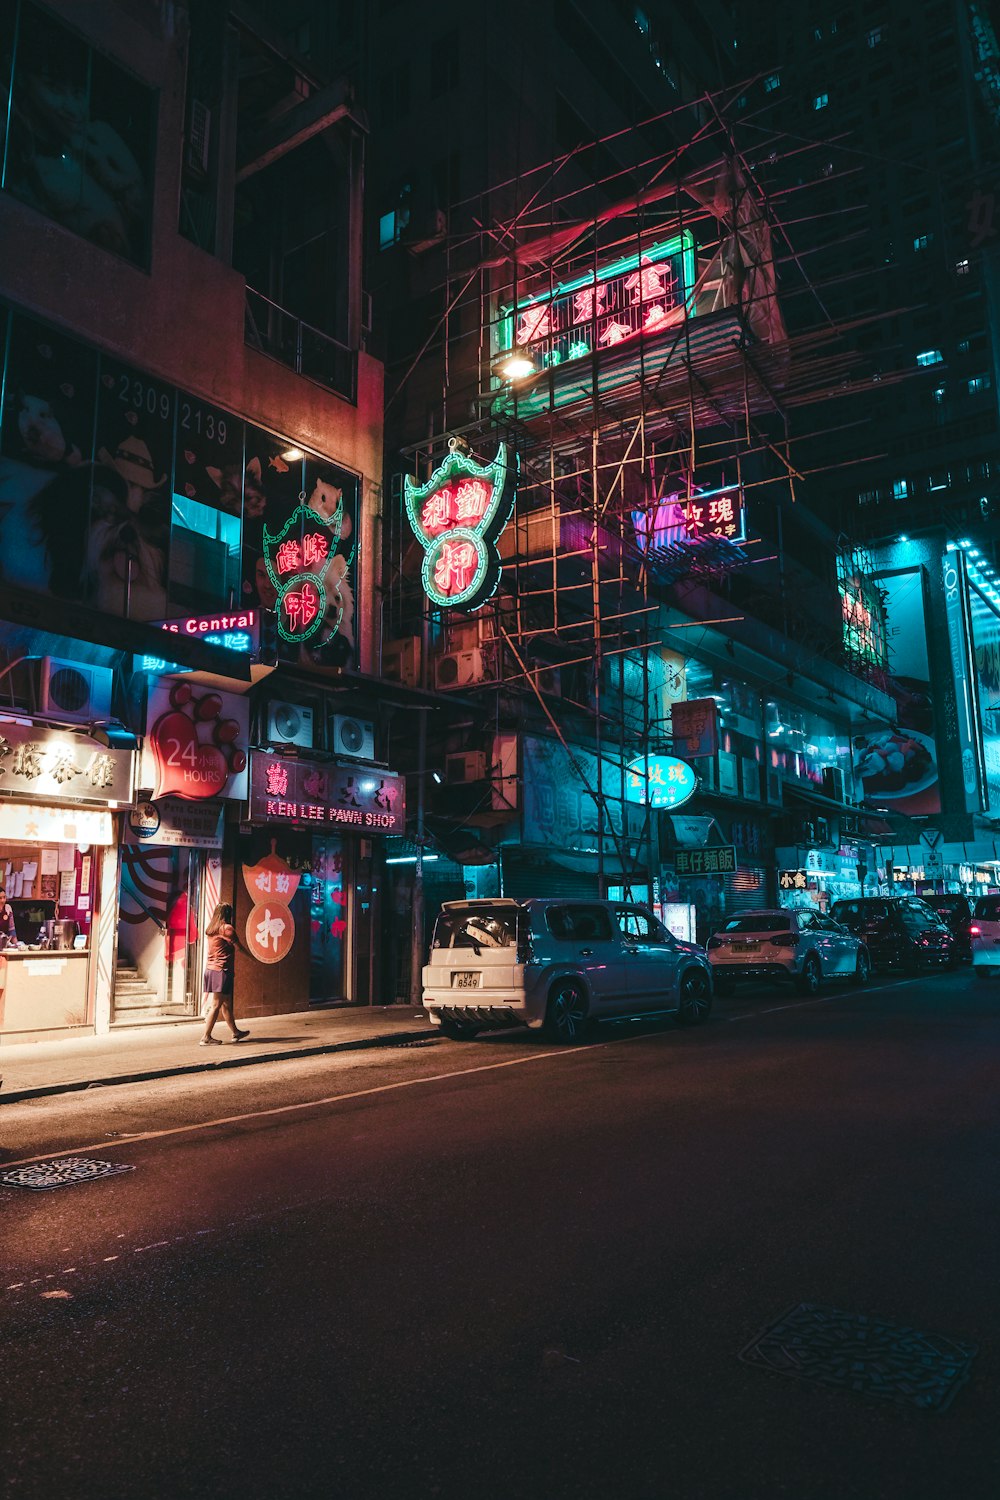 Une rue de la ville la nuit avec des enseignes au néon et des échafaudages